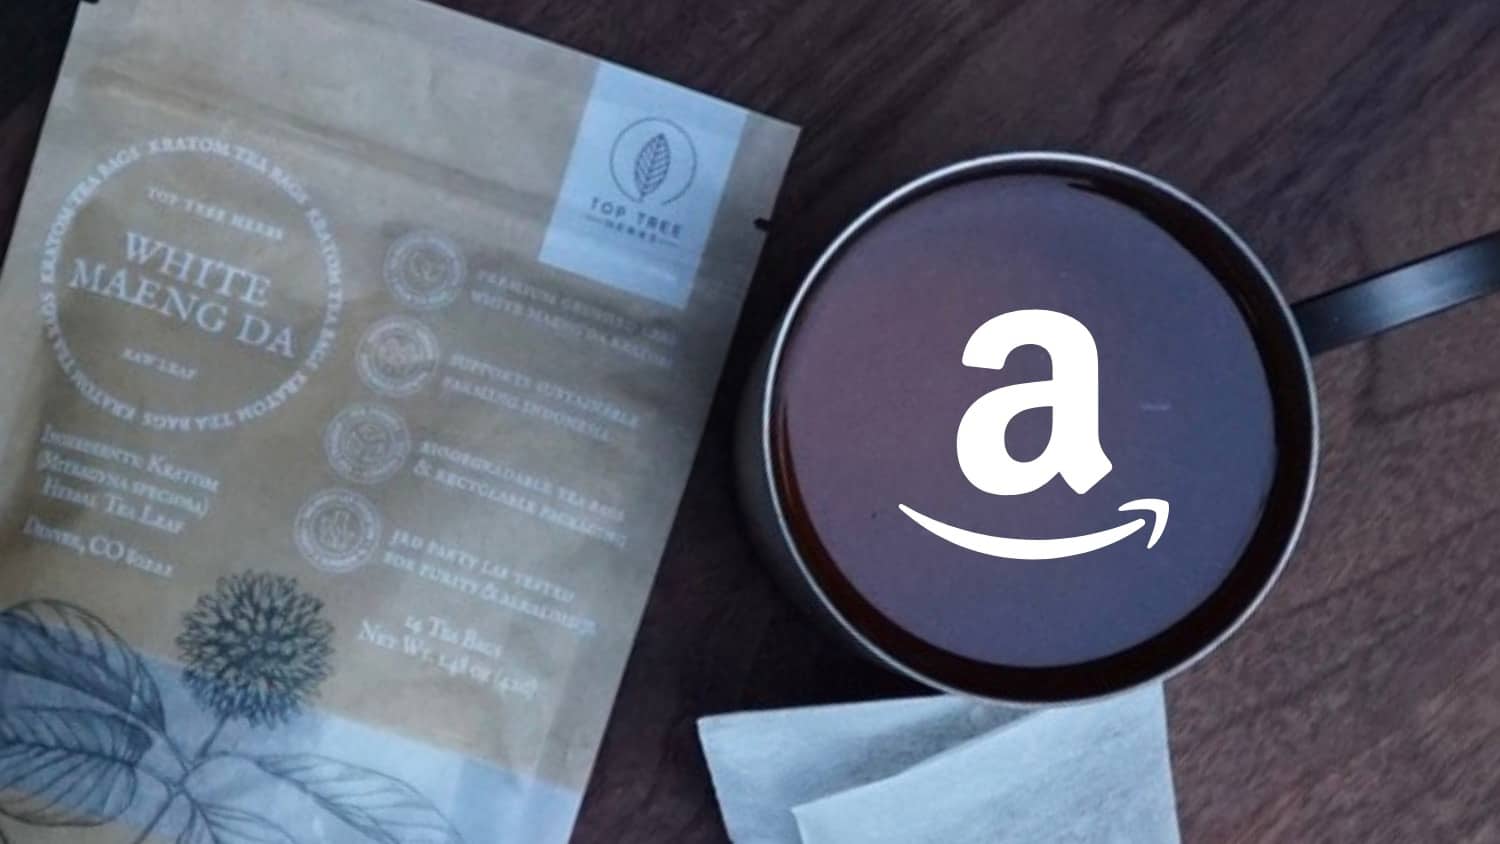 Buying kratom tea on Amazon - is it allowed?